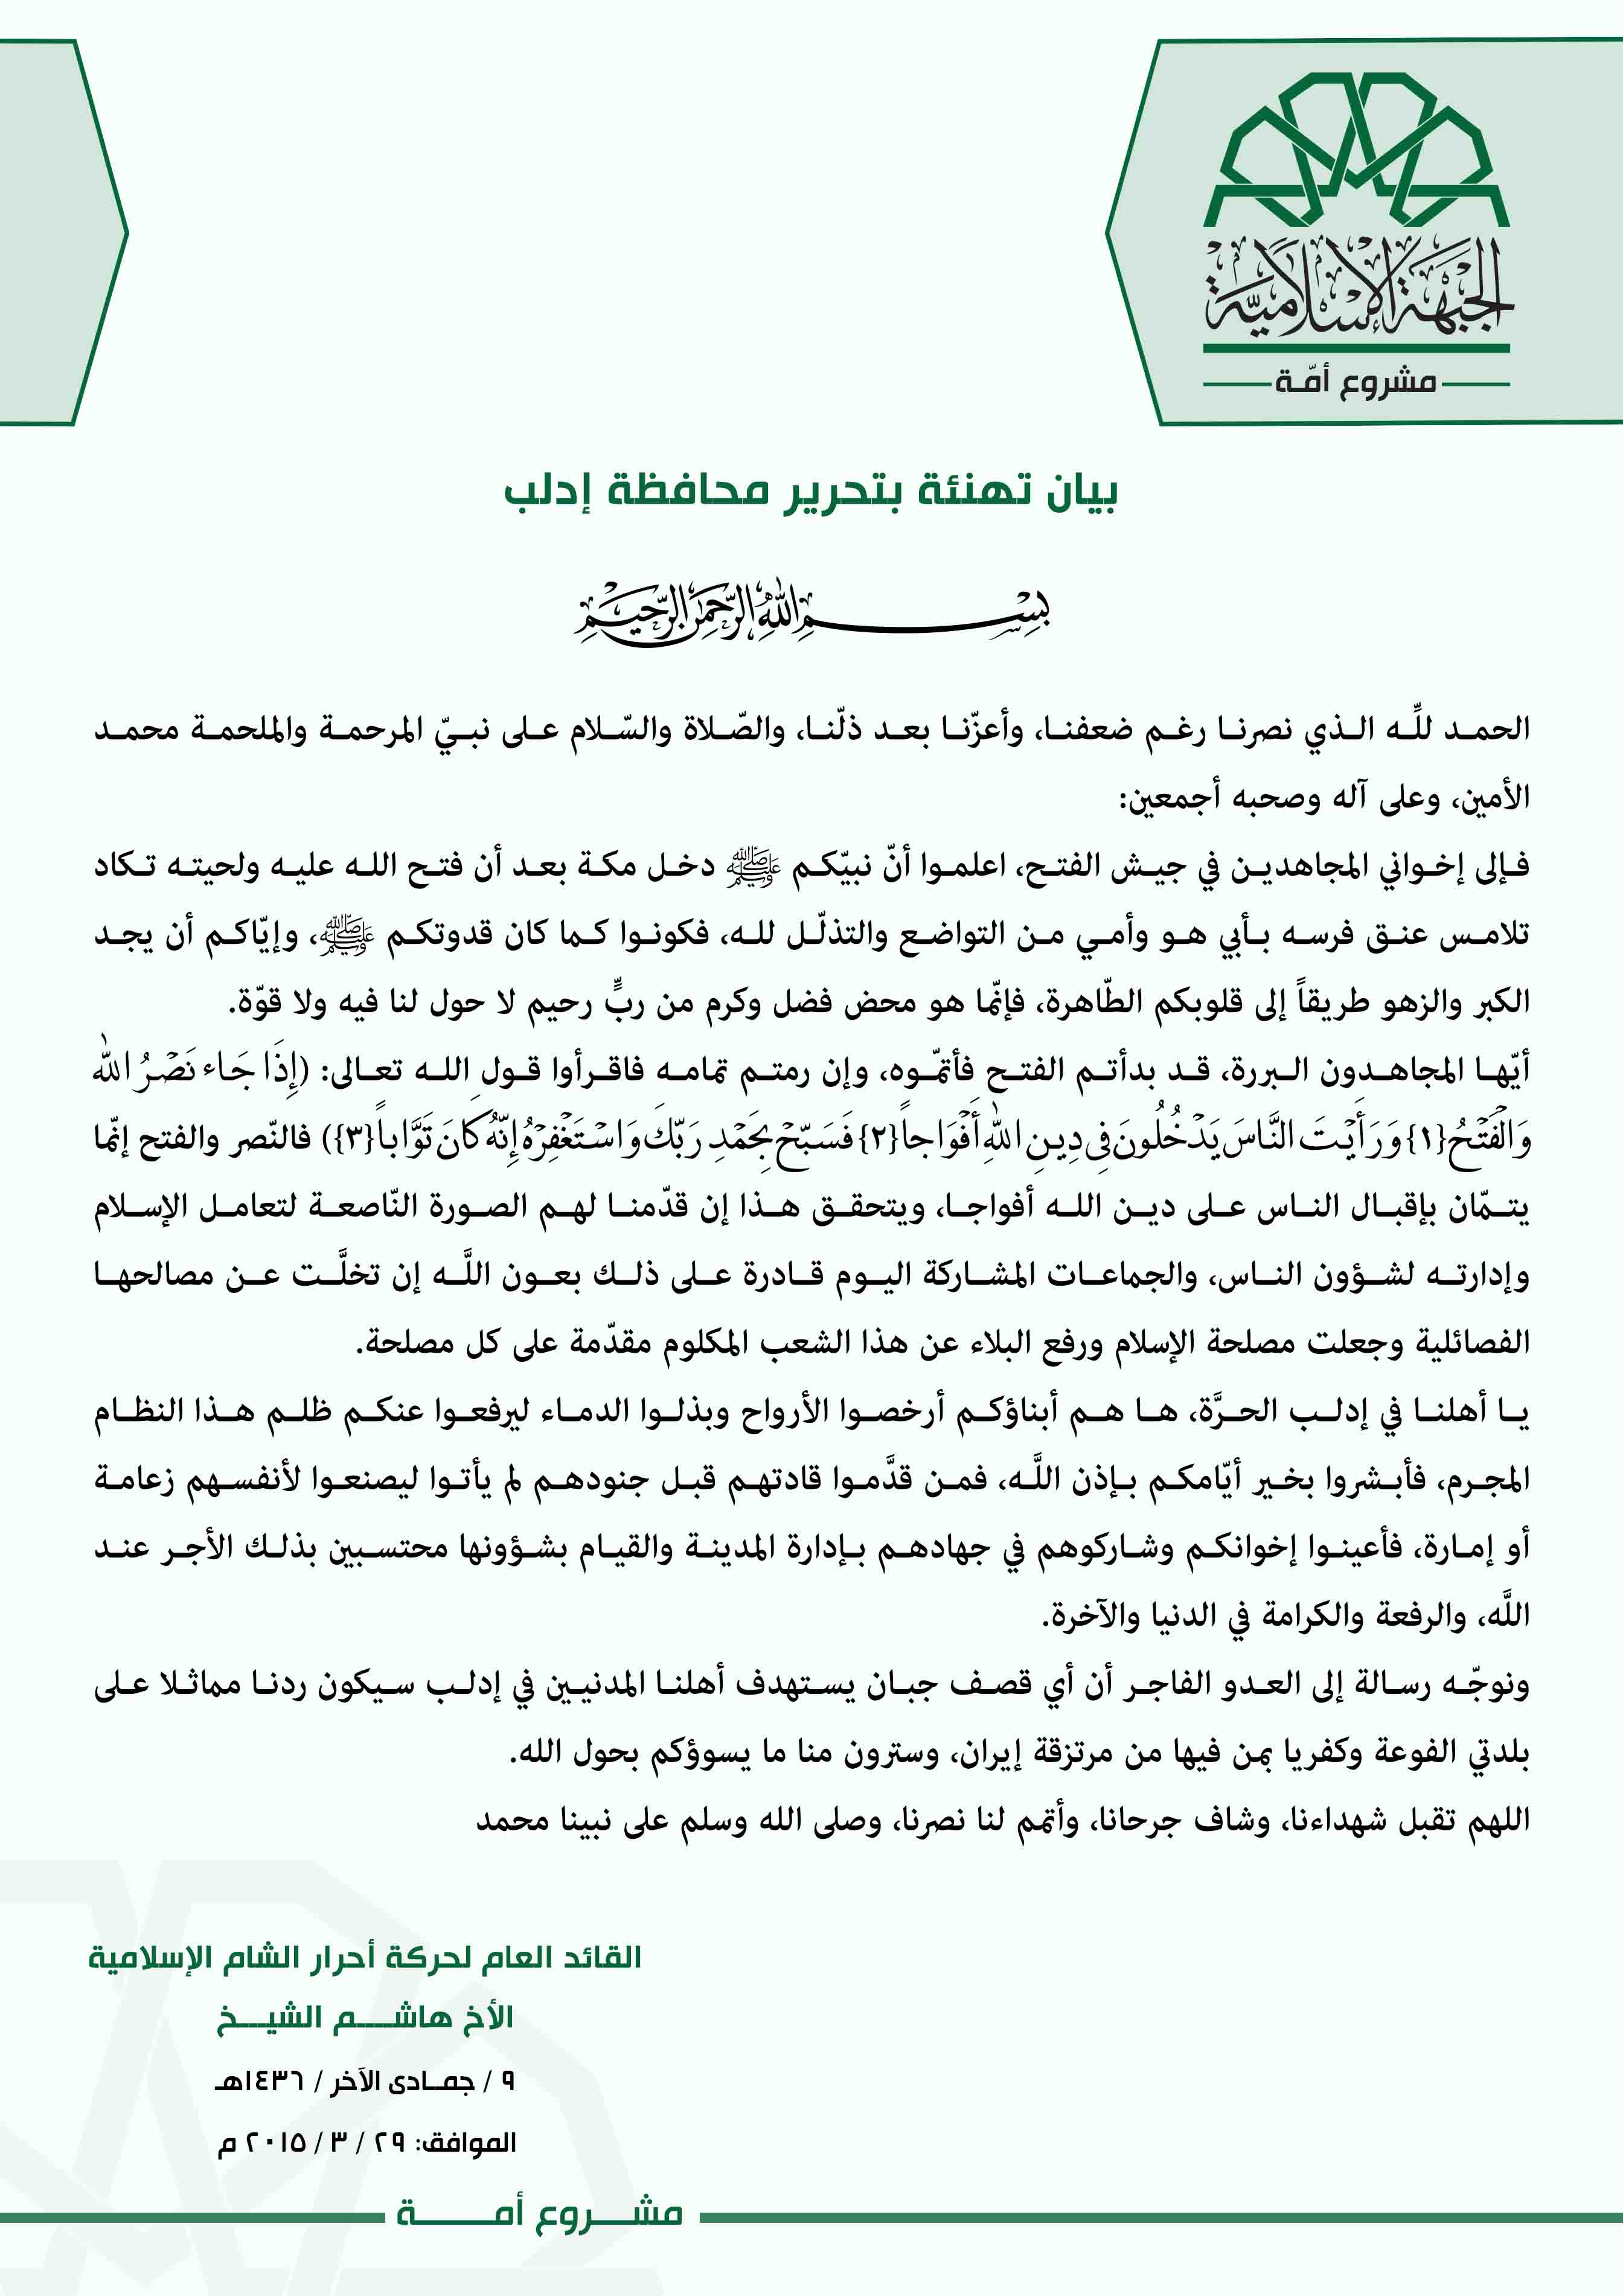 تهنئة الأخ هاشم الشيخ القائد العام لحركة أحرار الشام الإسلامية لأهالي سوريا بتحرير إدلب